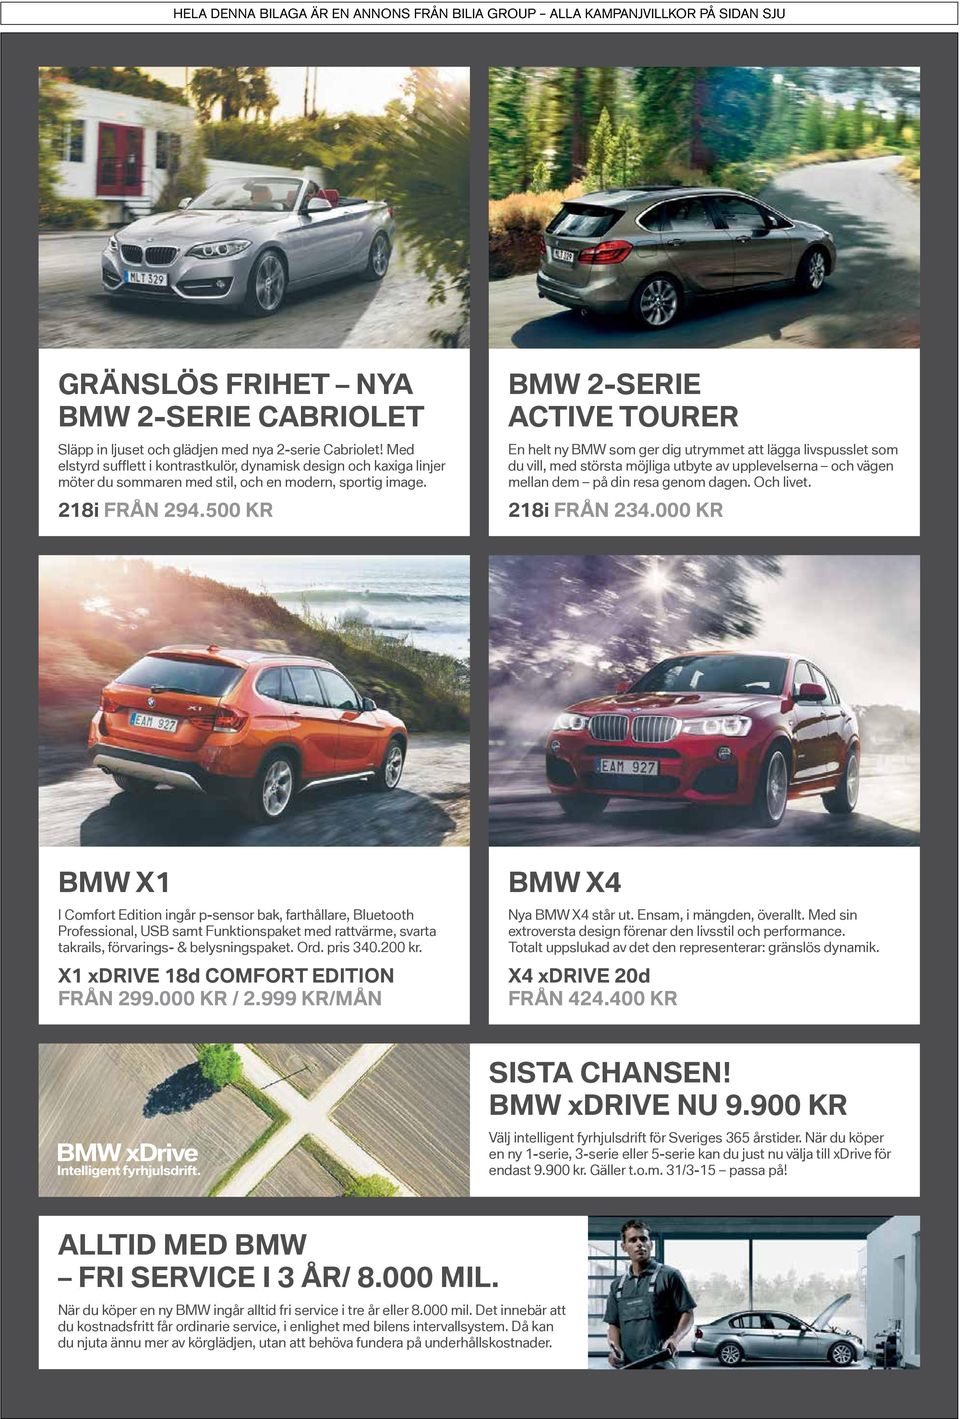 500 Kr bmw 2-Serie Active tourer En helt ny BMW som ger dig utrymmet att lägga livs pusslet som du vill, med största möjliga utbyte av upplevelserna och vägen mellan dem på din resa genom dagen.